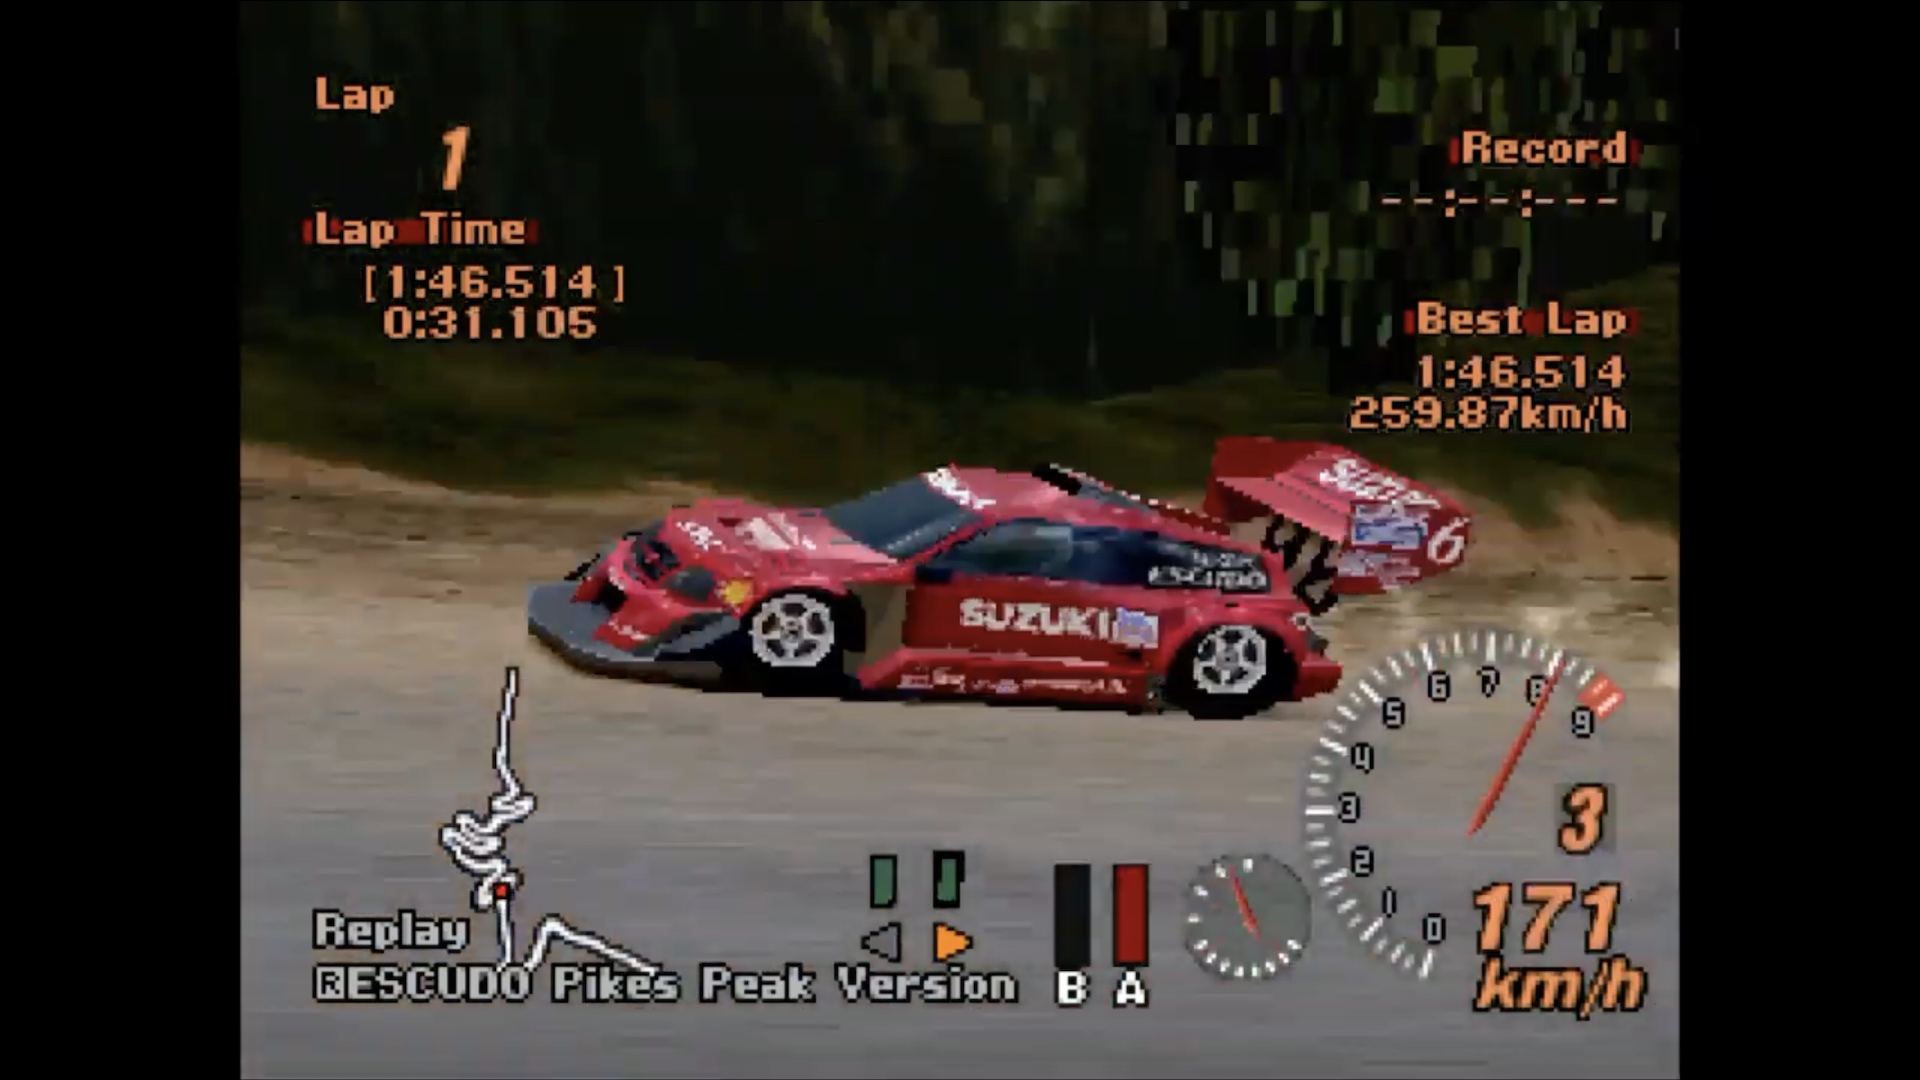 A Suzuki Escudo Pikes Peak races along in a Gran Turismo 2 replay.